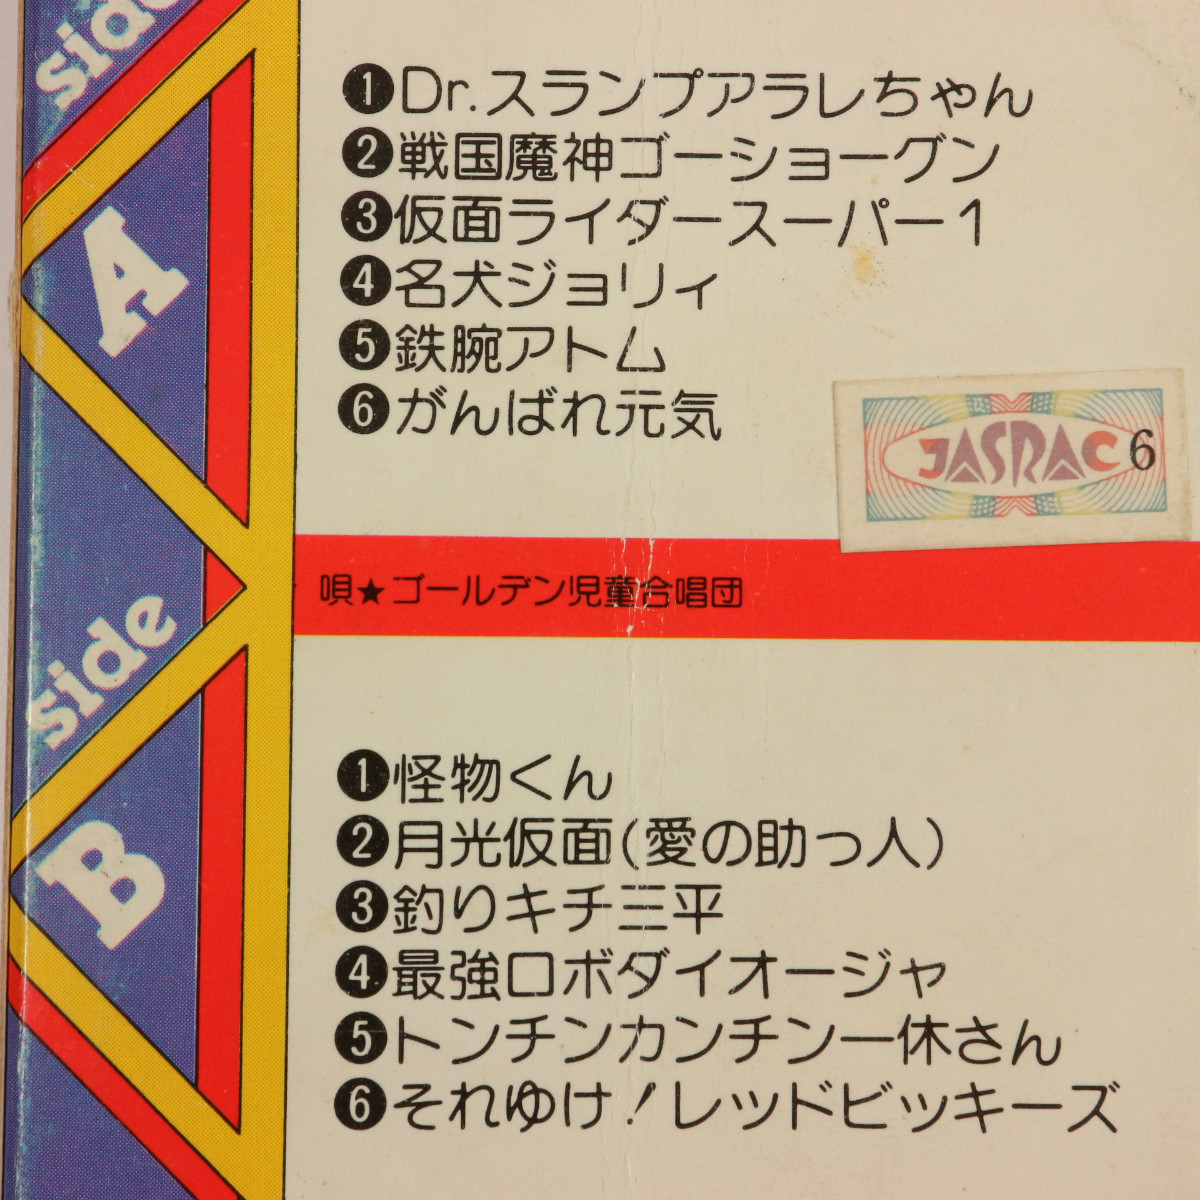 ** Showa Retro Pachi son cassette tape tv manga Pachi spool **Dr. slump go- show gn. thing kun large o-ja Ikkyuu-san 